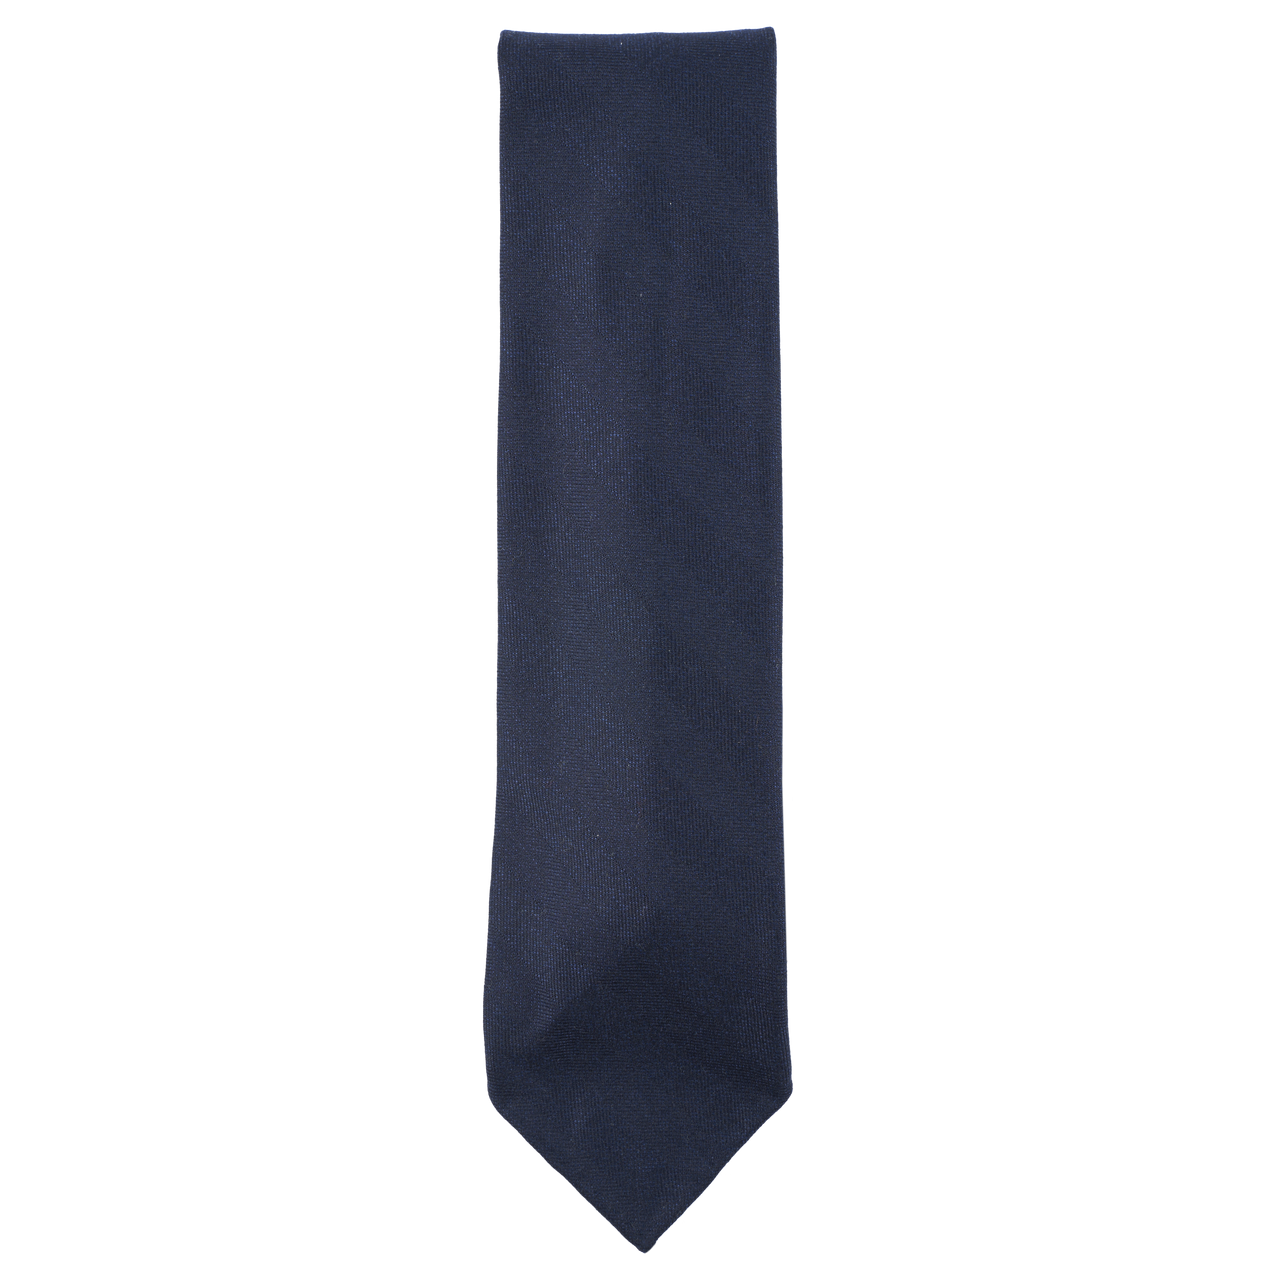 Vanda Tie in Navy Herringbone Wool